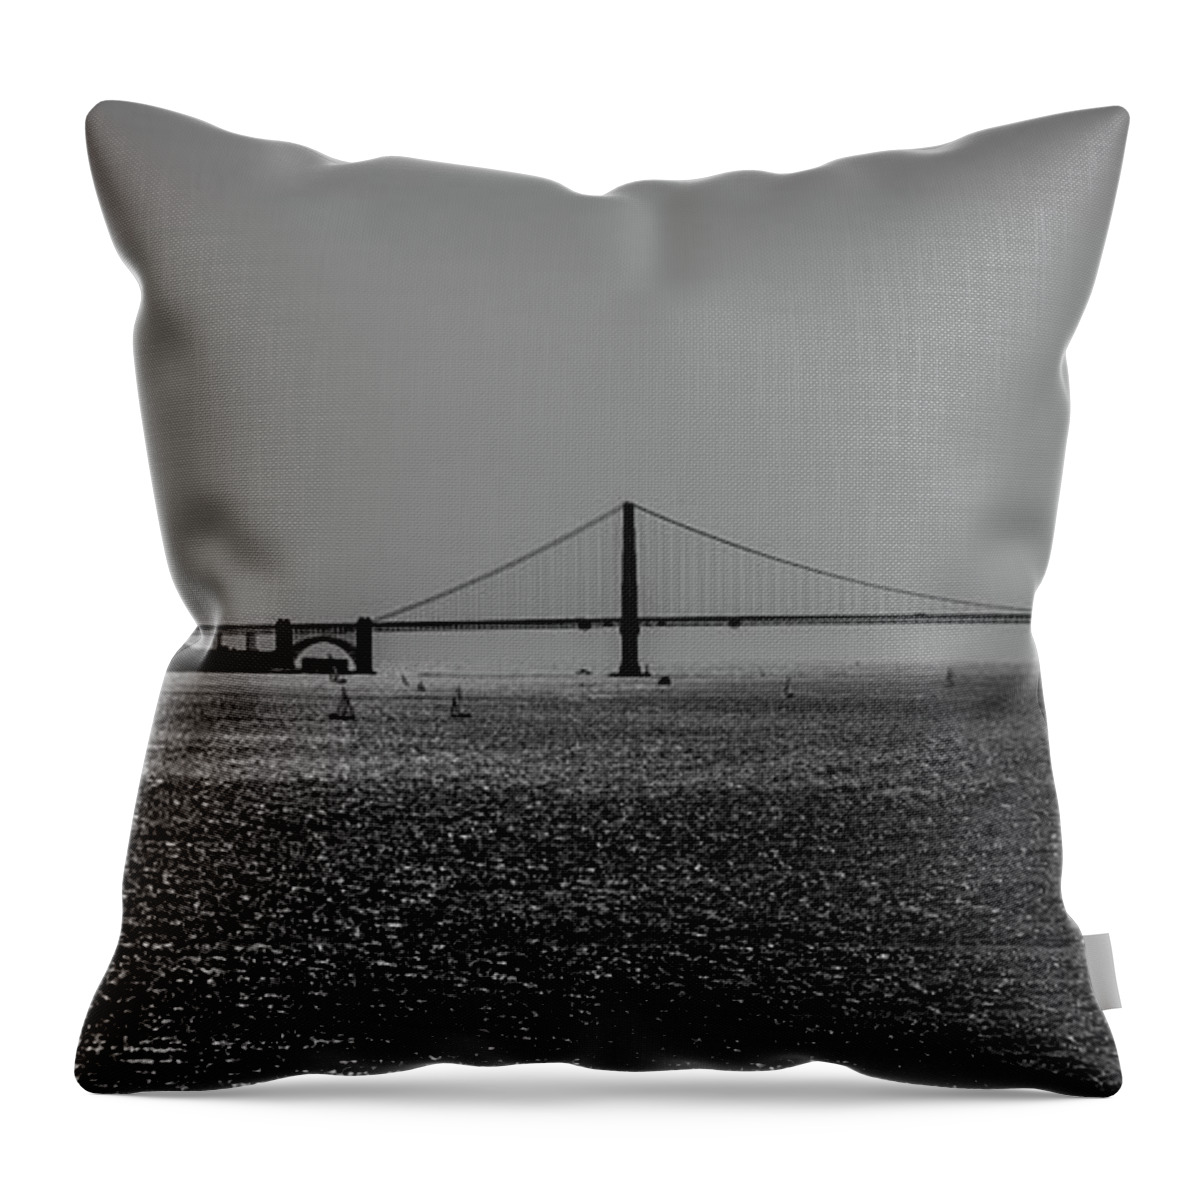 Golden Gate Bridge Throw Pillow featuring the photograph Golden Gate Bridge #2 by Stuart Manning